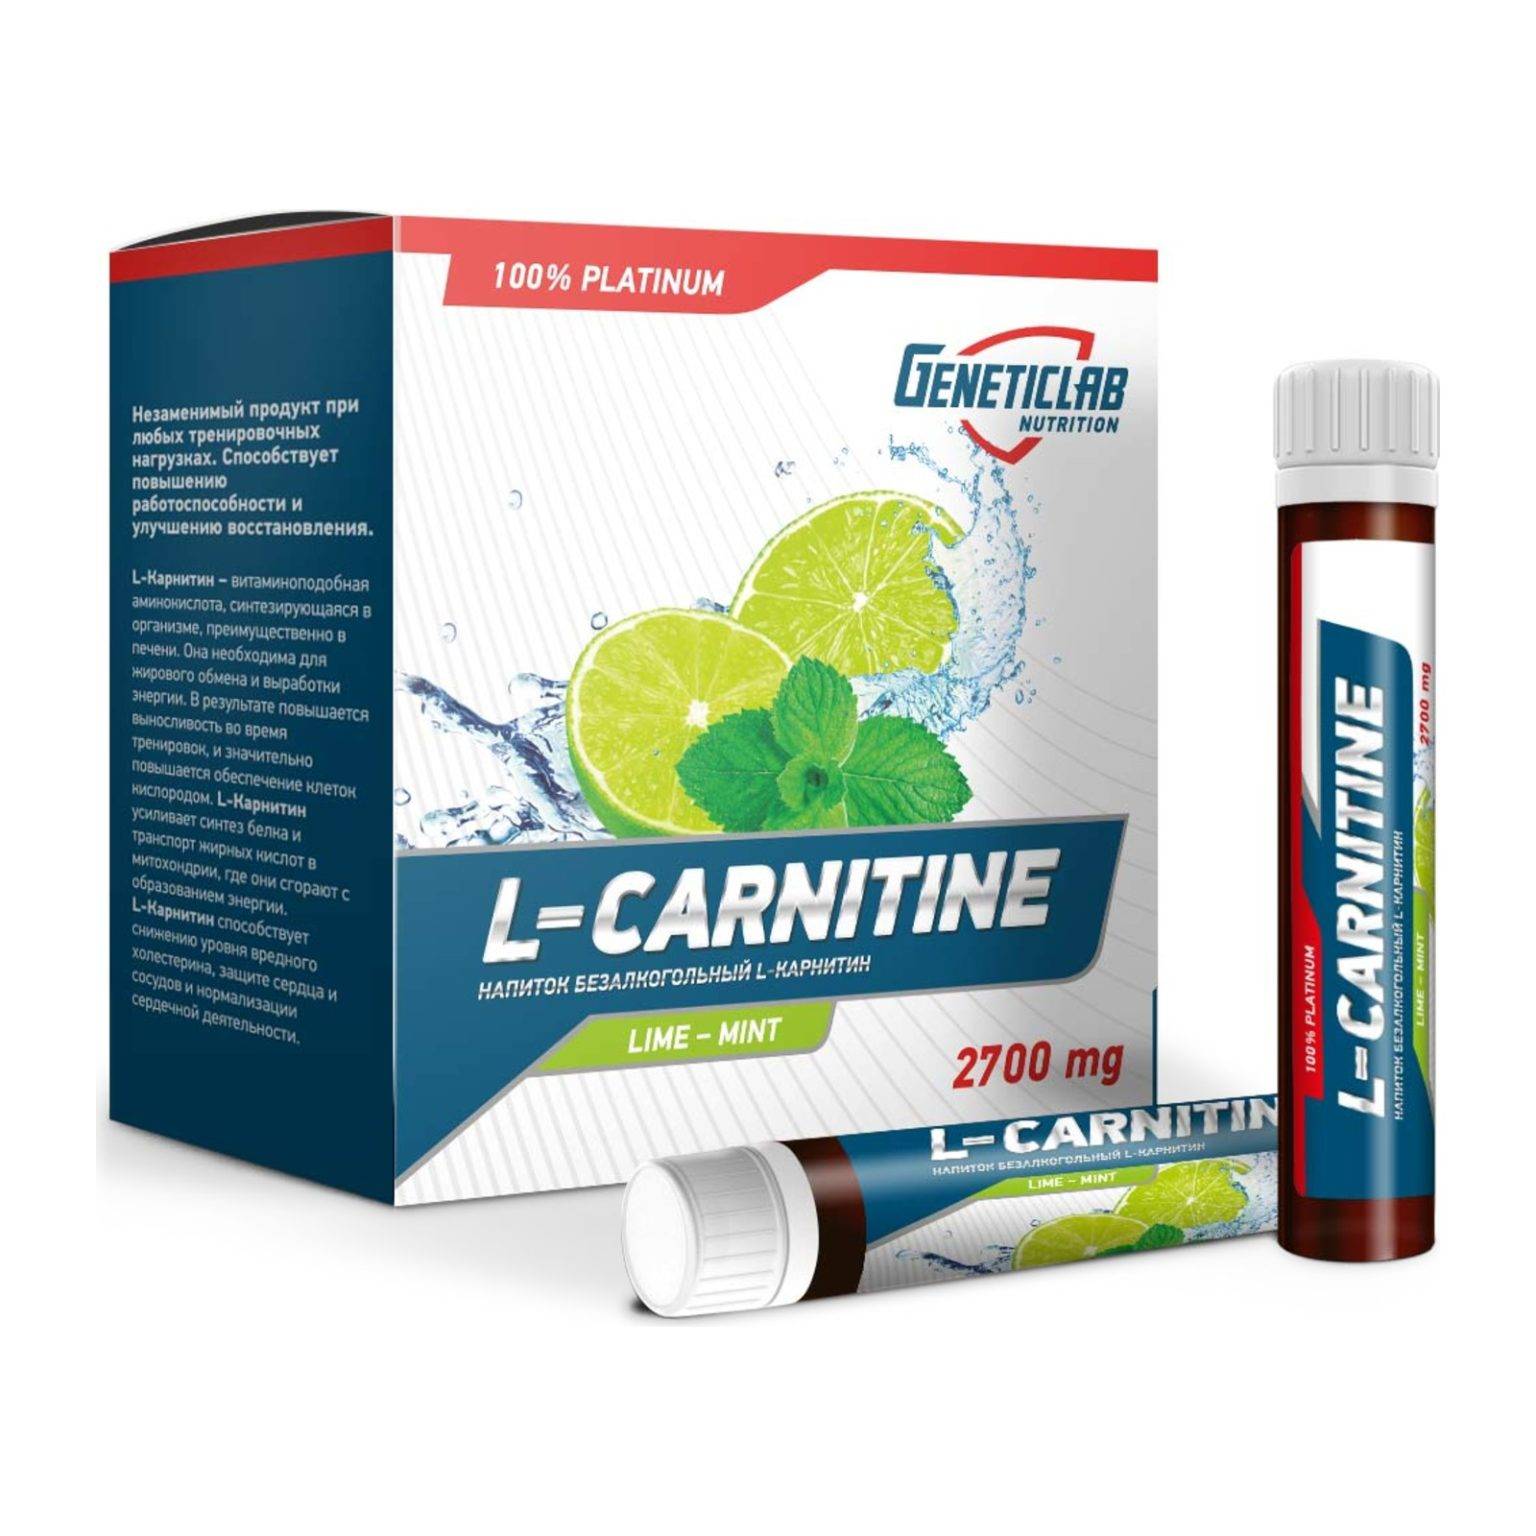 Как выбрать ацетил-l-карнитин?